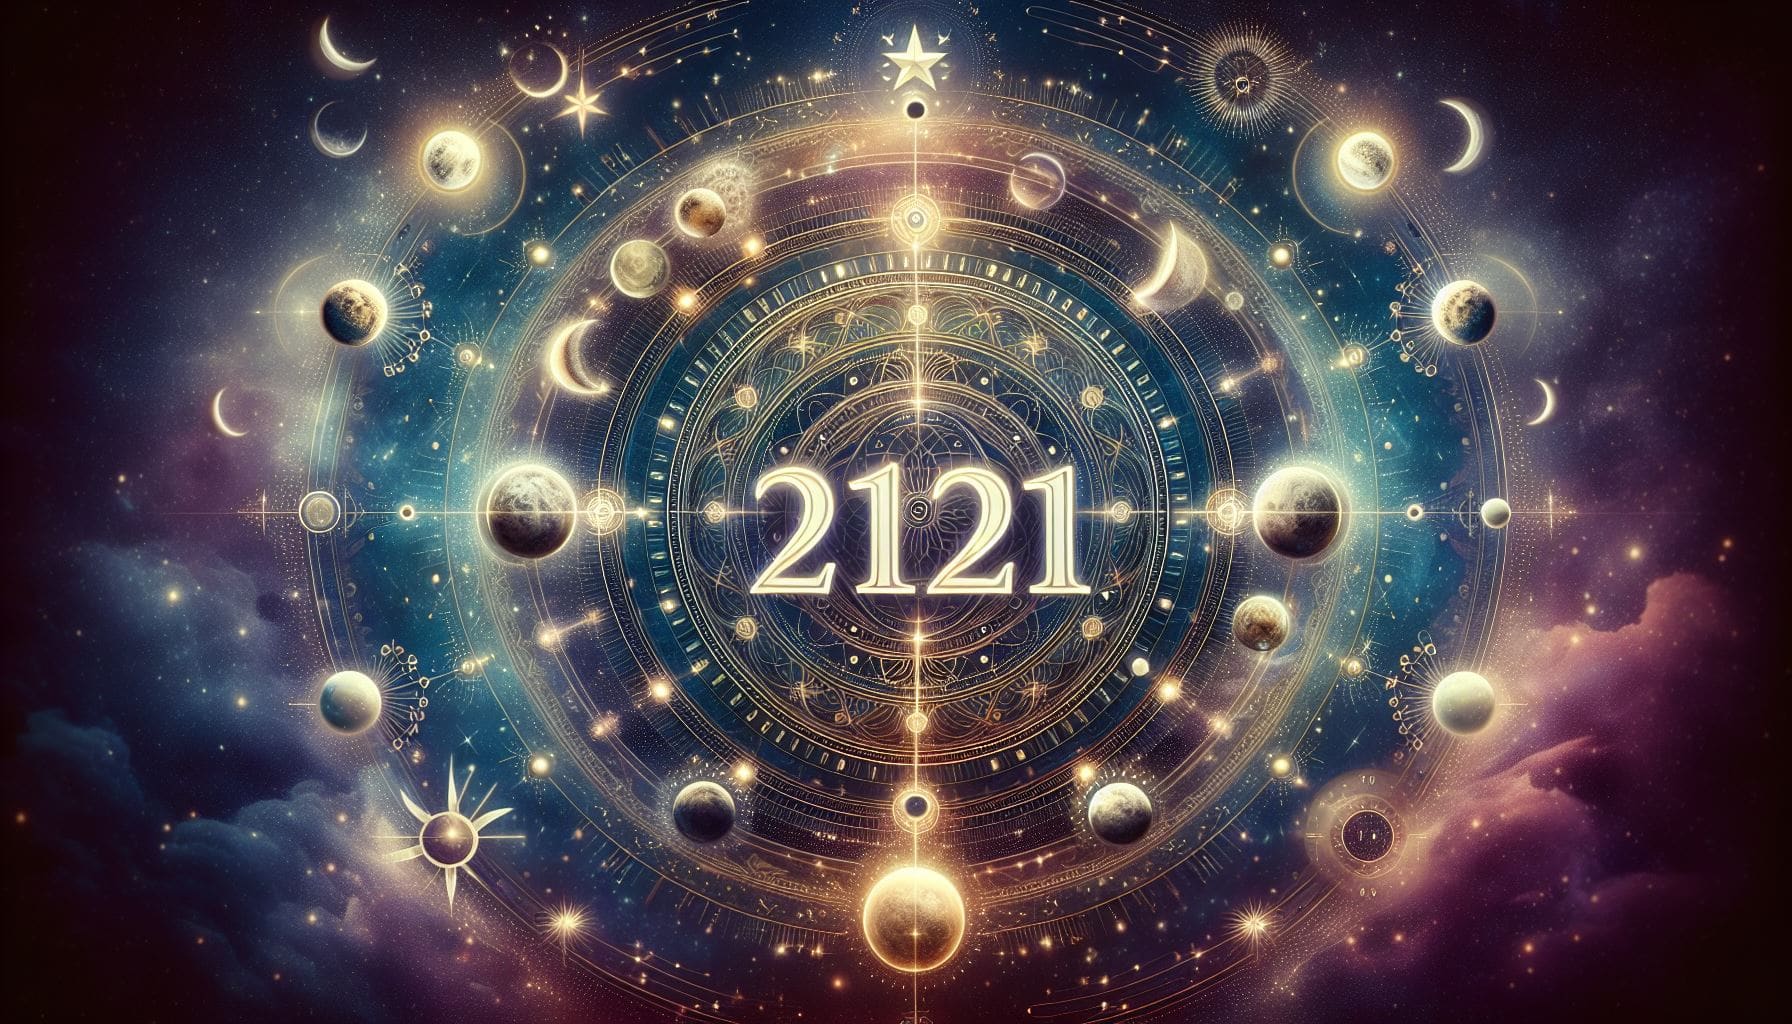 2121 significado espiritual